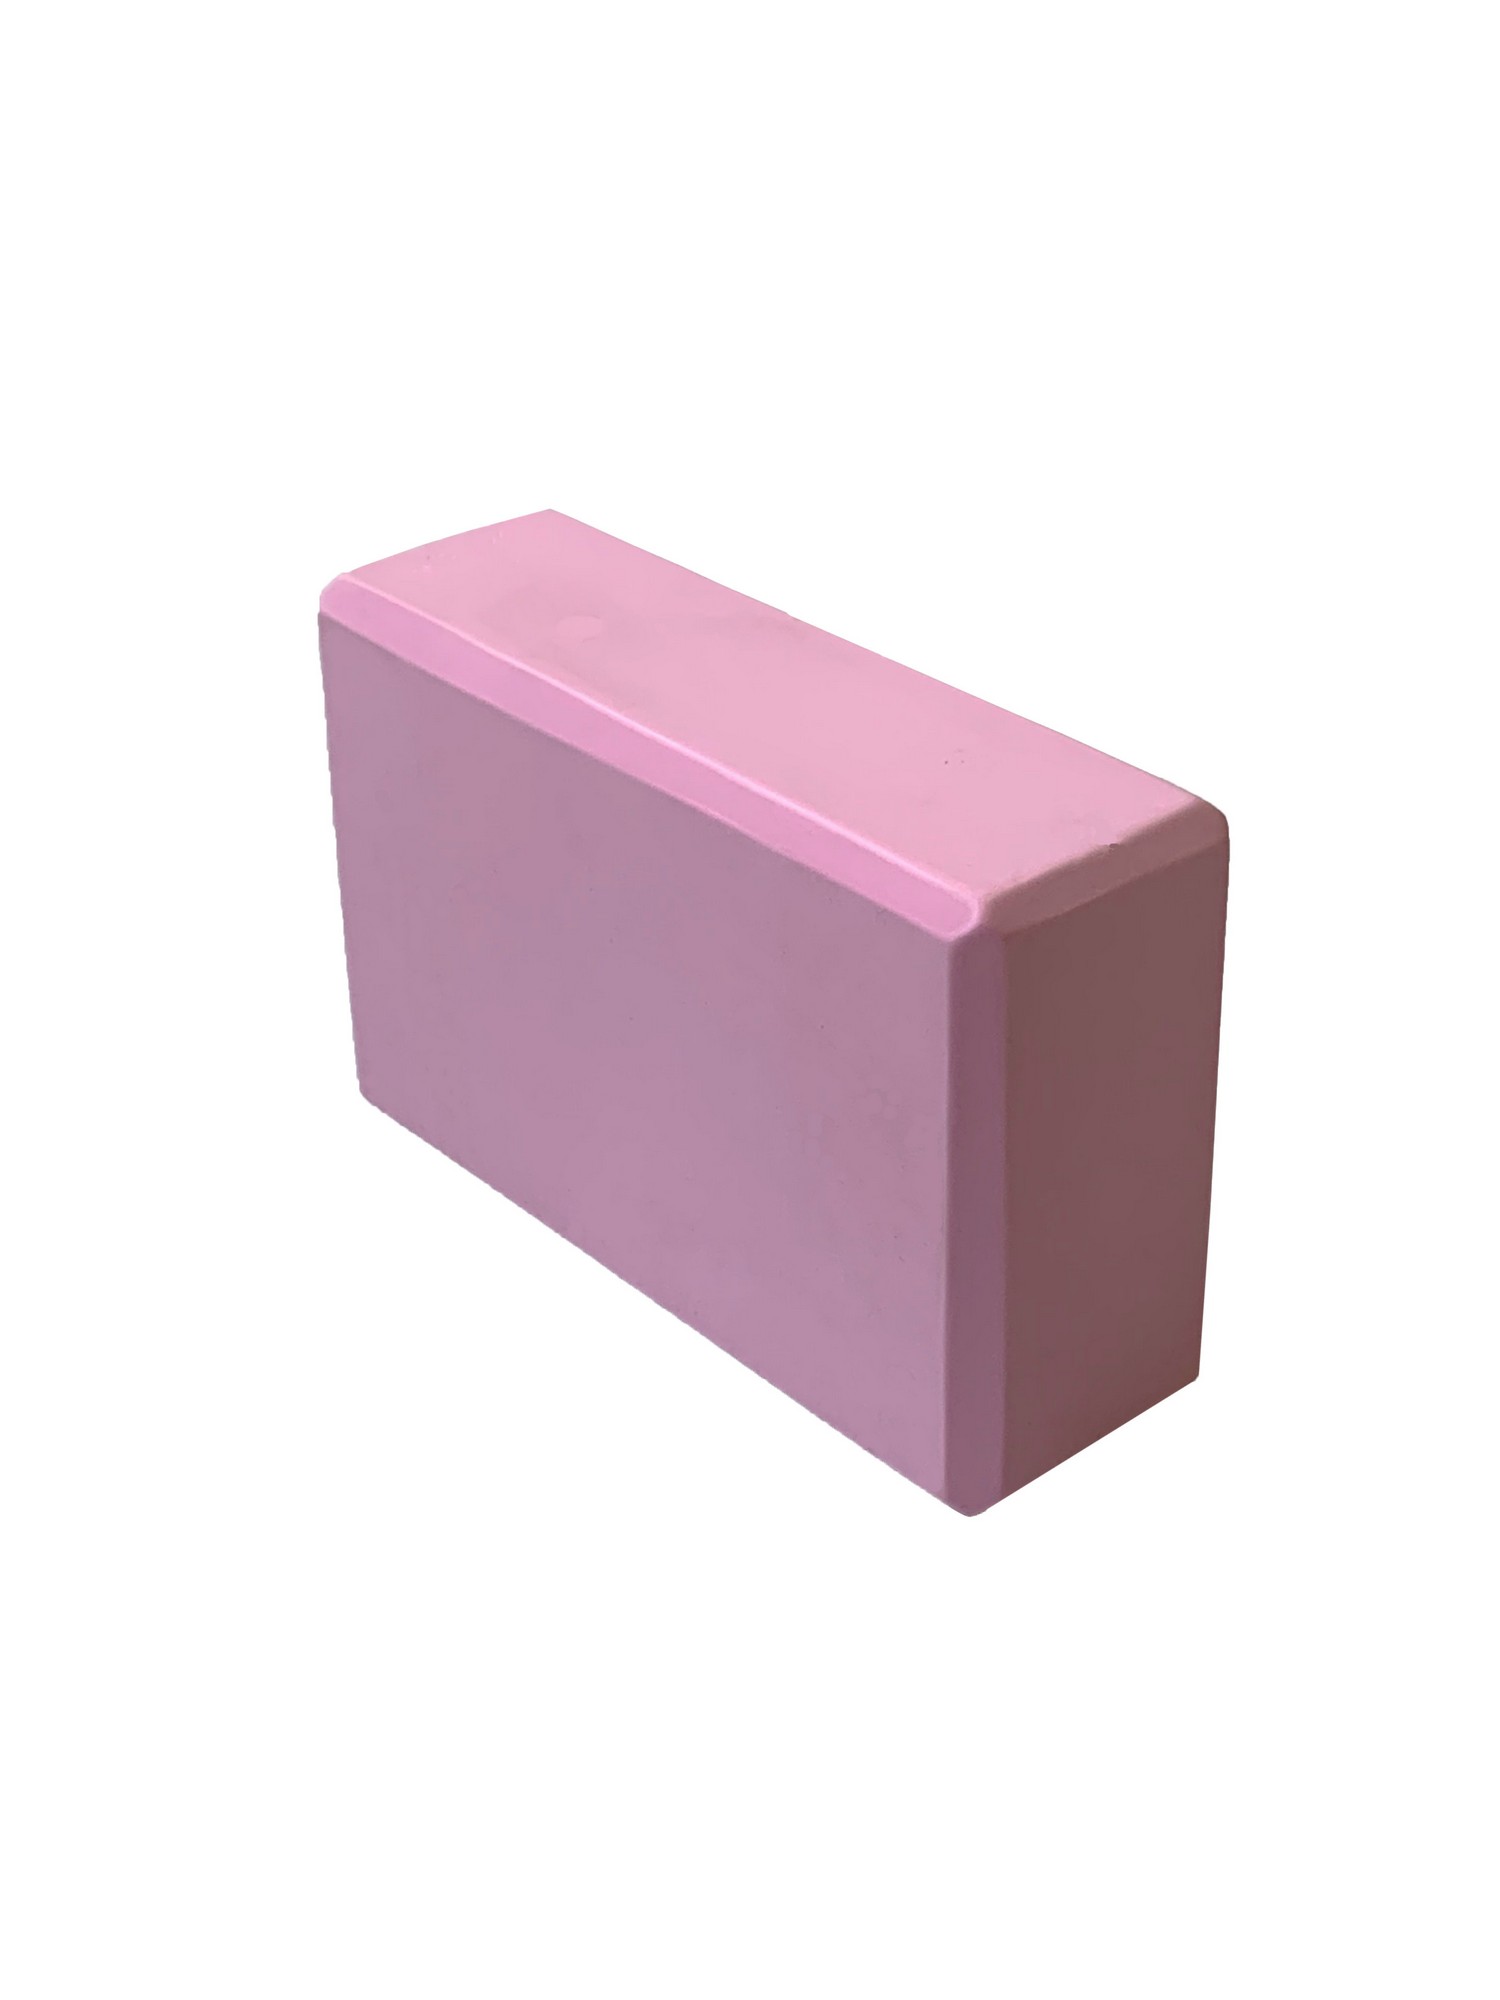 Йога блок Sportex полумягкий, из вспененного ЭВА 22,3х15х7,6 см E39131-45 розовый